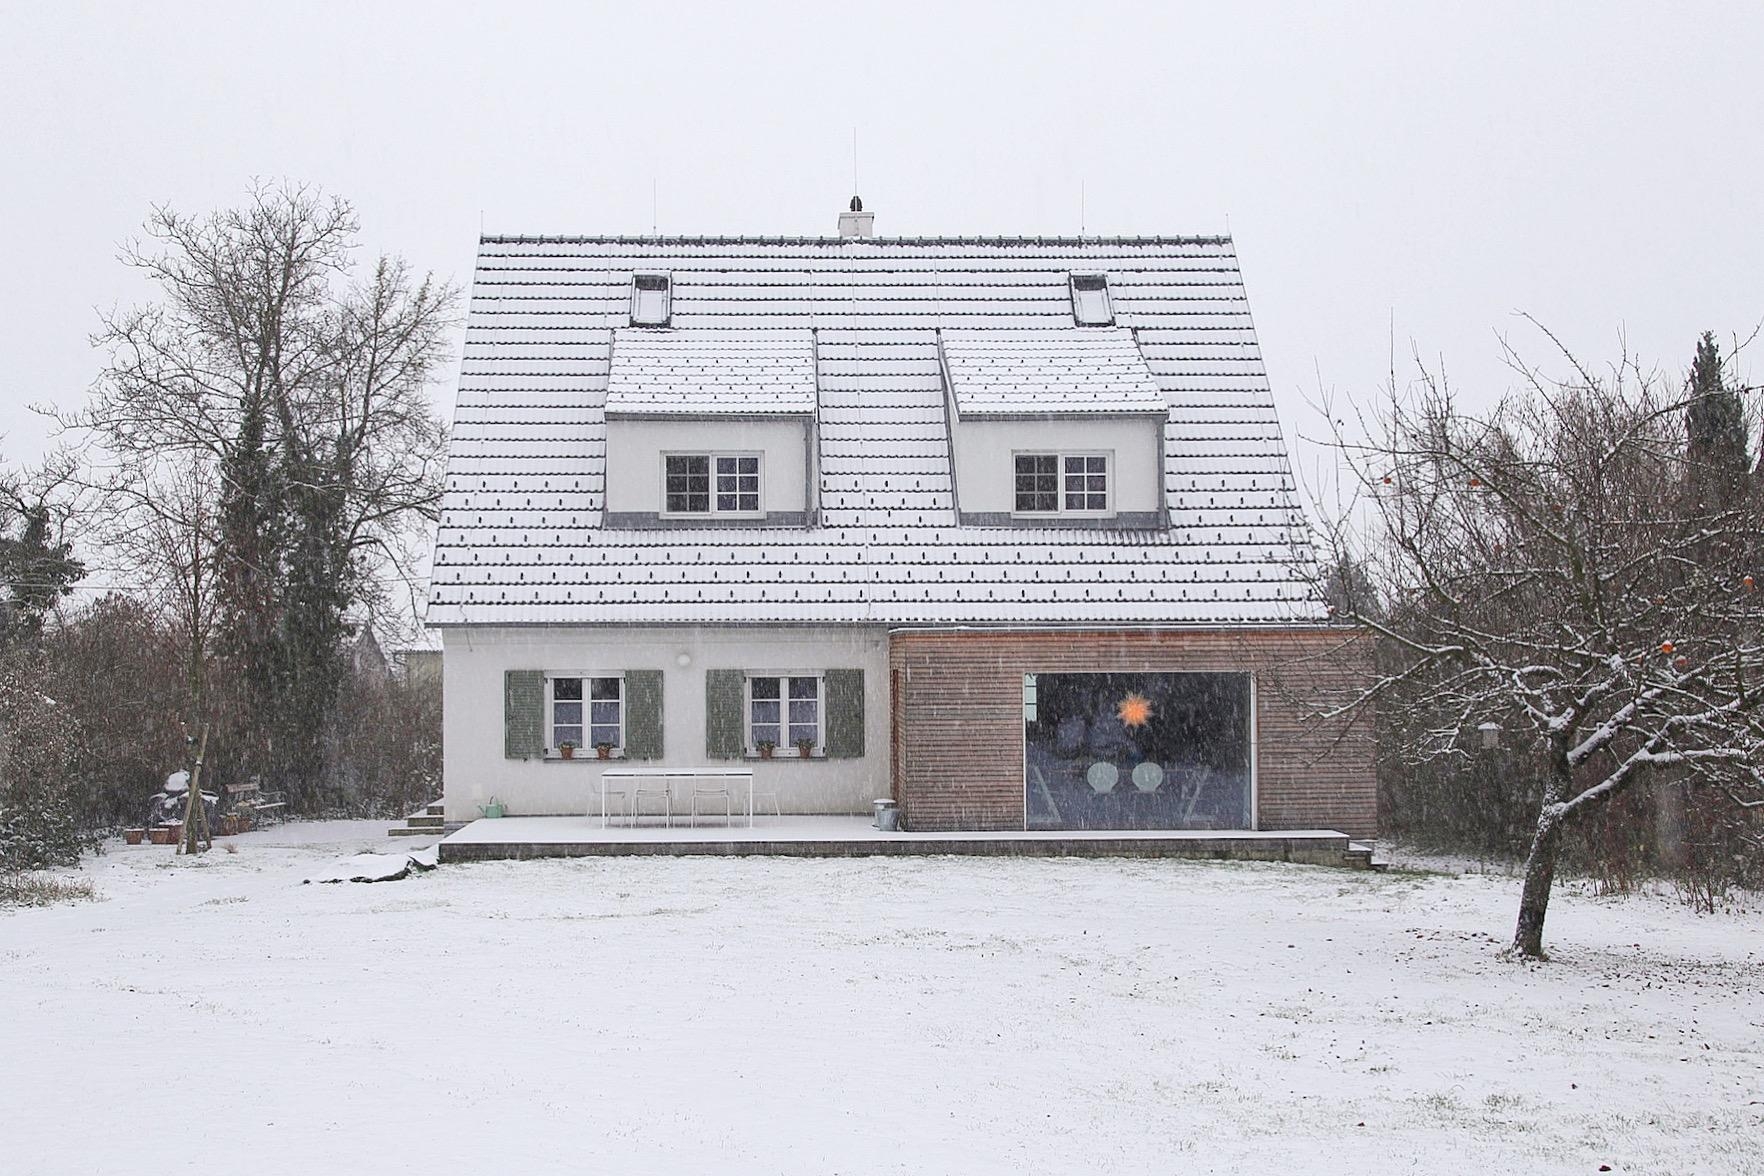 Let it snow, let it snow, let it snow! ❄️❄️❄️ #ersterschnee #siedlungshaus